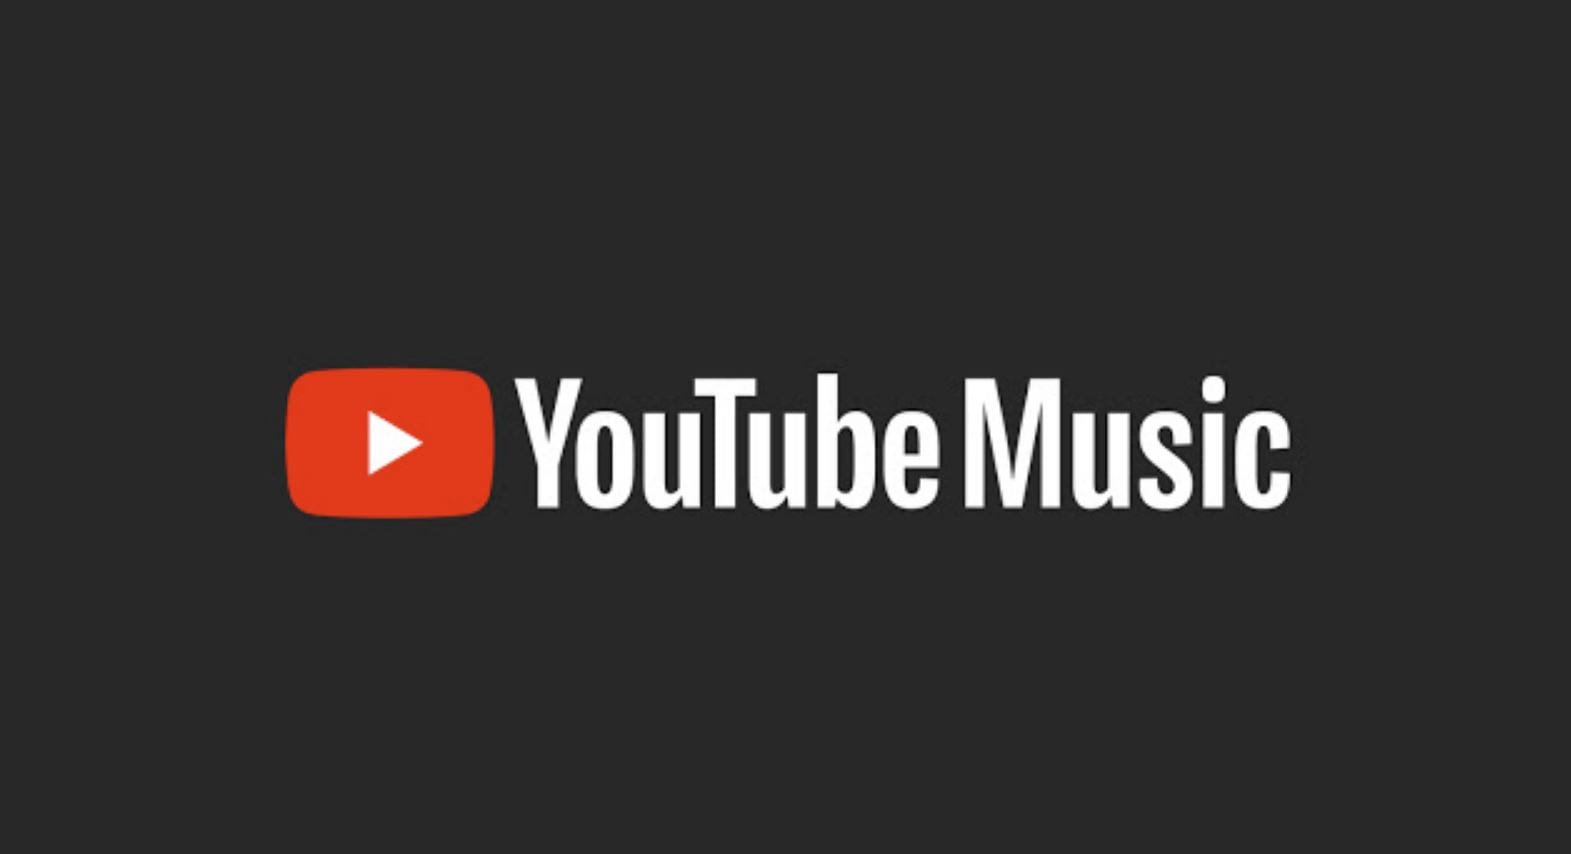 YouTube come Spotify, arrivano le pubblicità solo audio